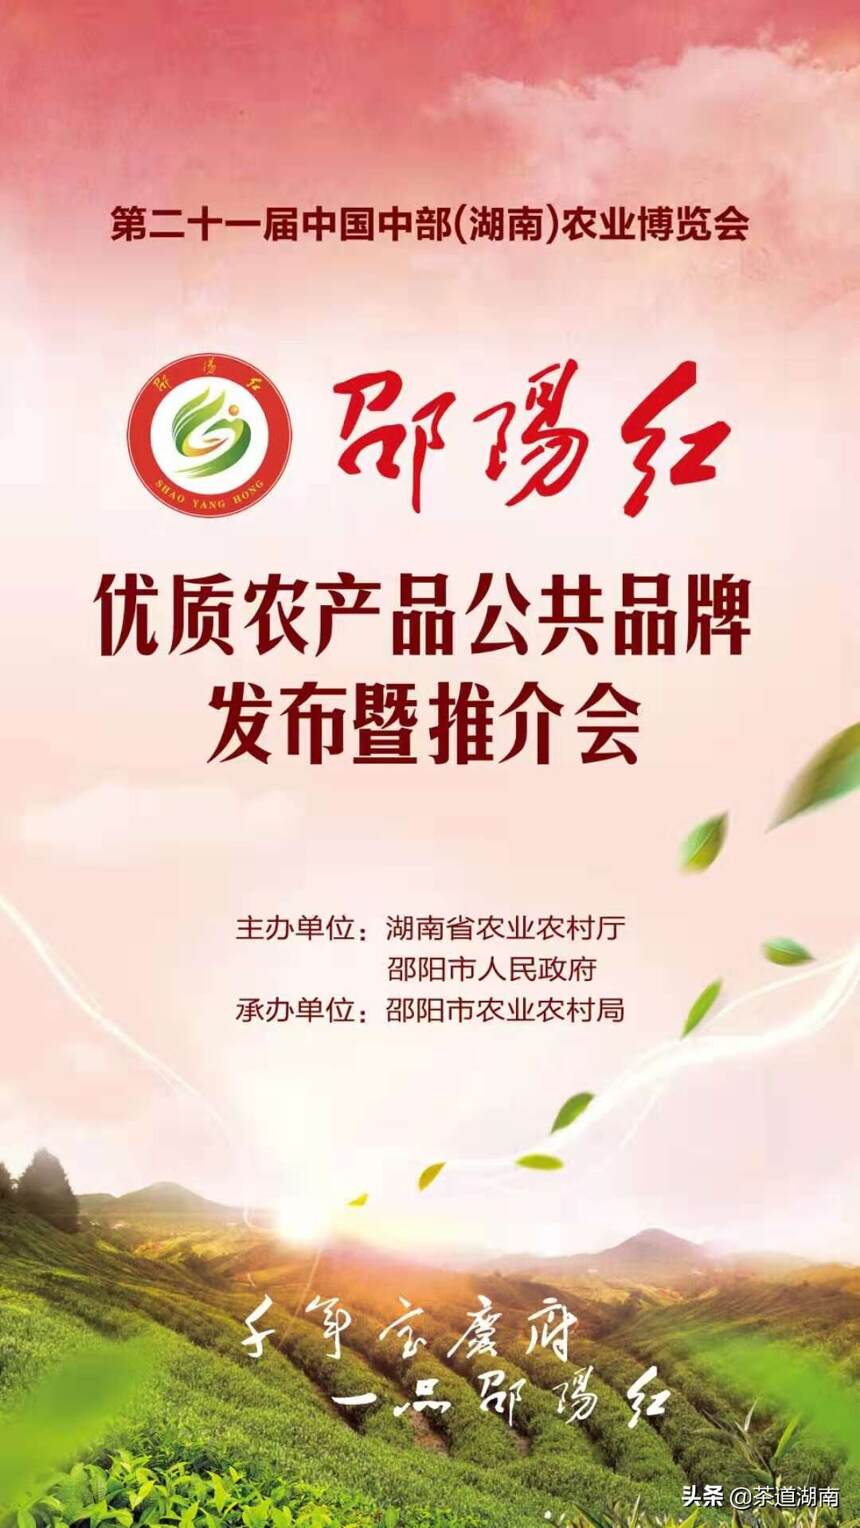 “邵阳红”优质农产品公共品牌发布暨推介会举行